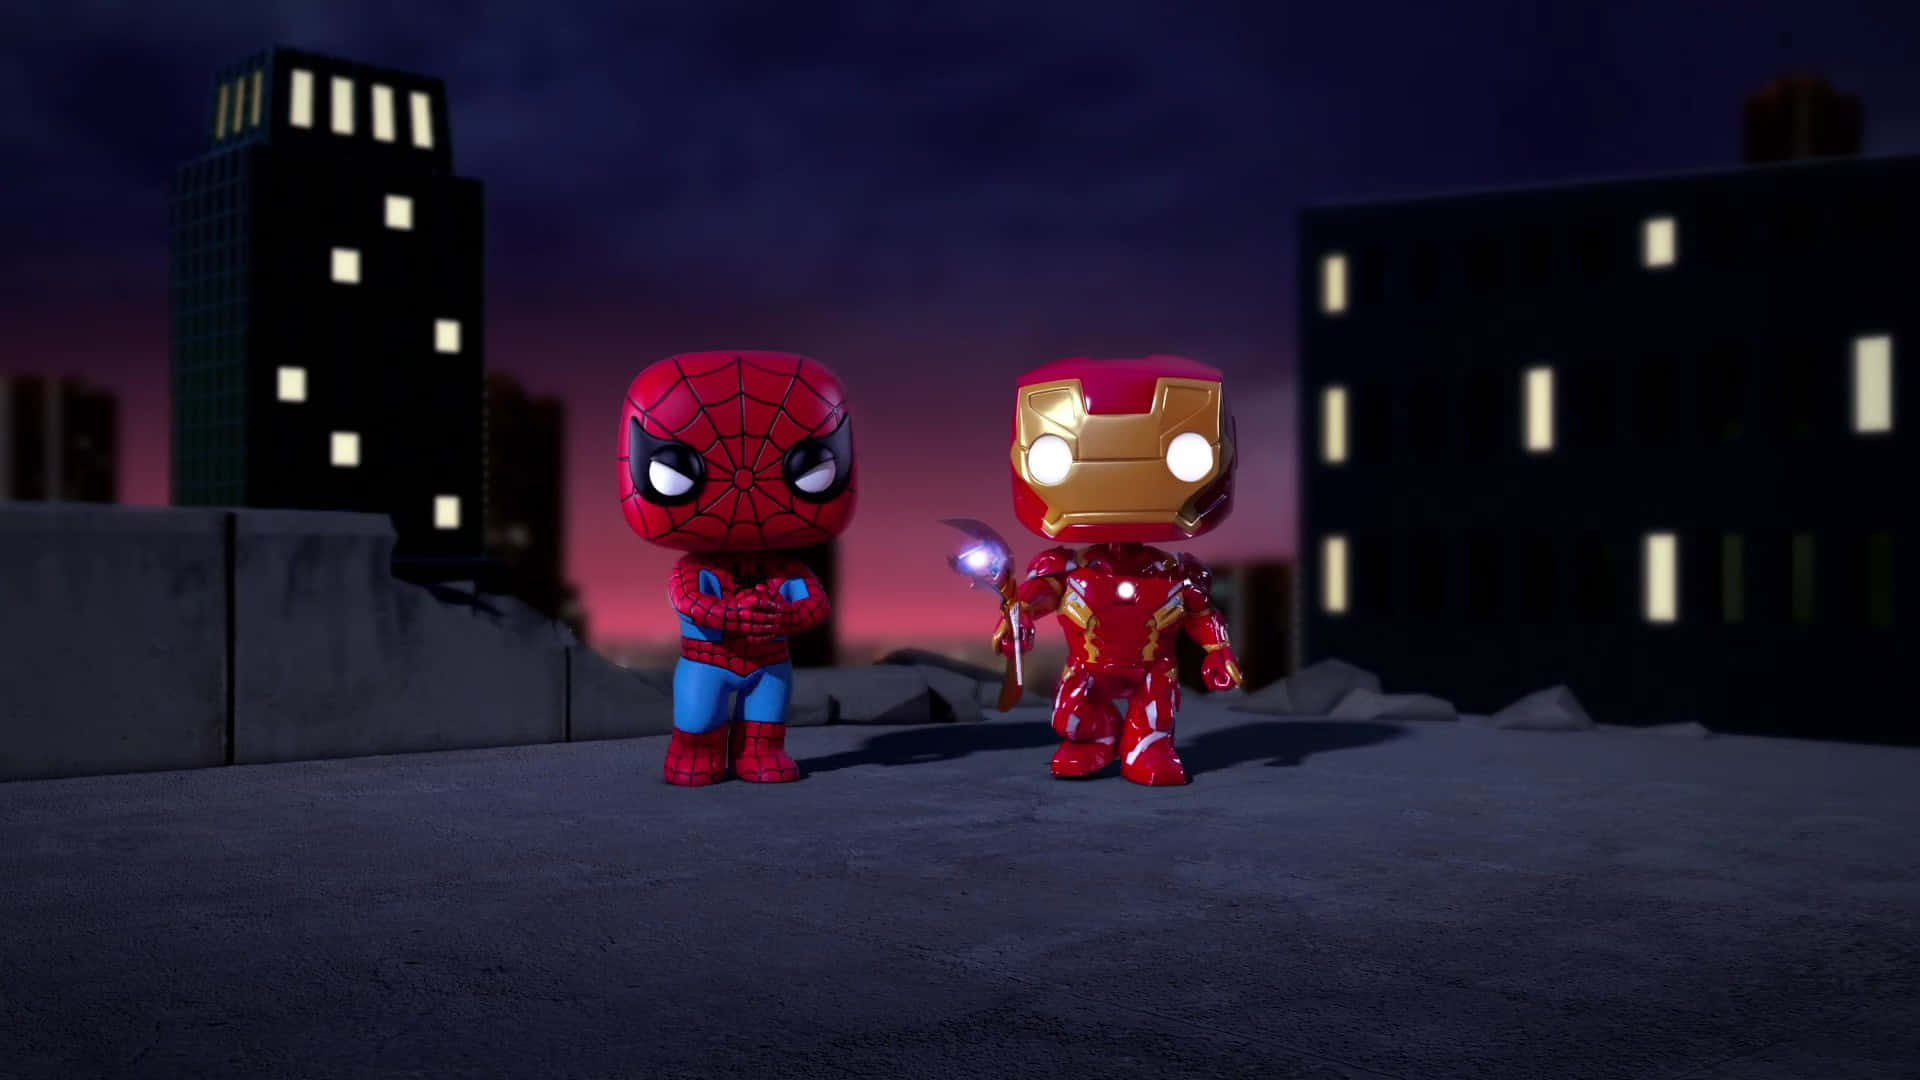 Den fantastiske Spider Man og Iron Man, Beskytter verden Wallpaper